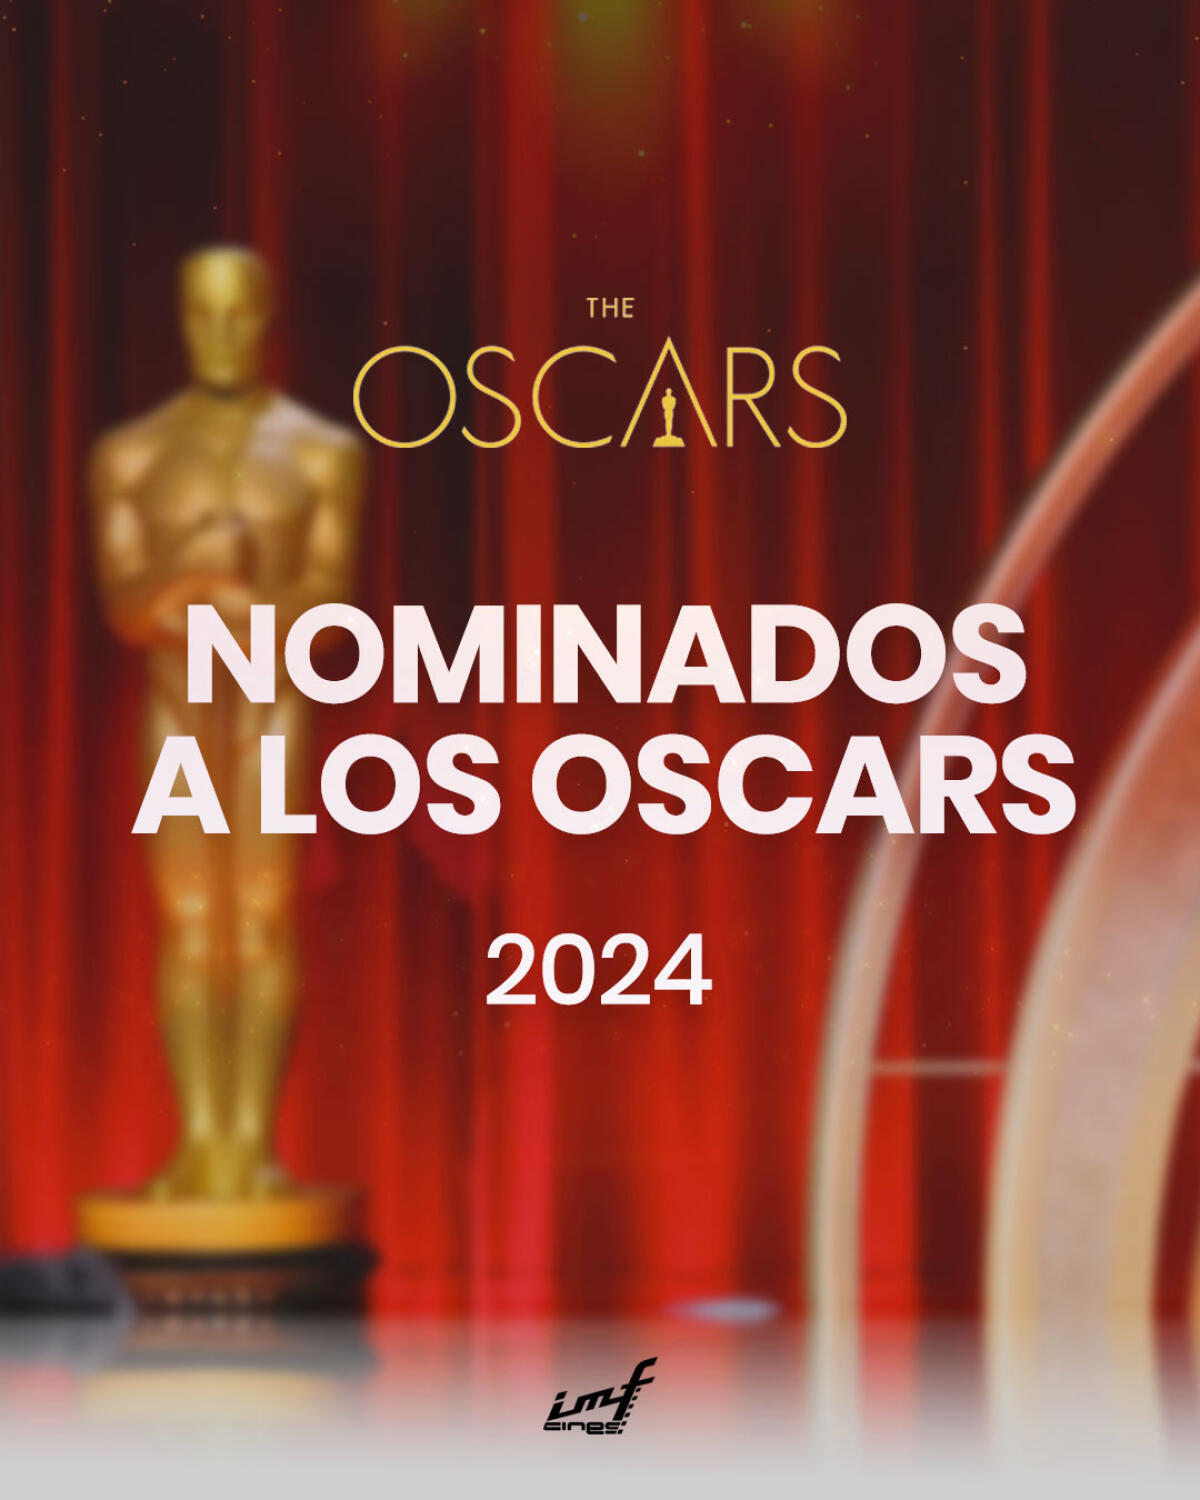 Descubre la lista de nominados a los Oscars 2024 